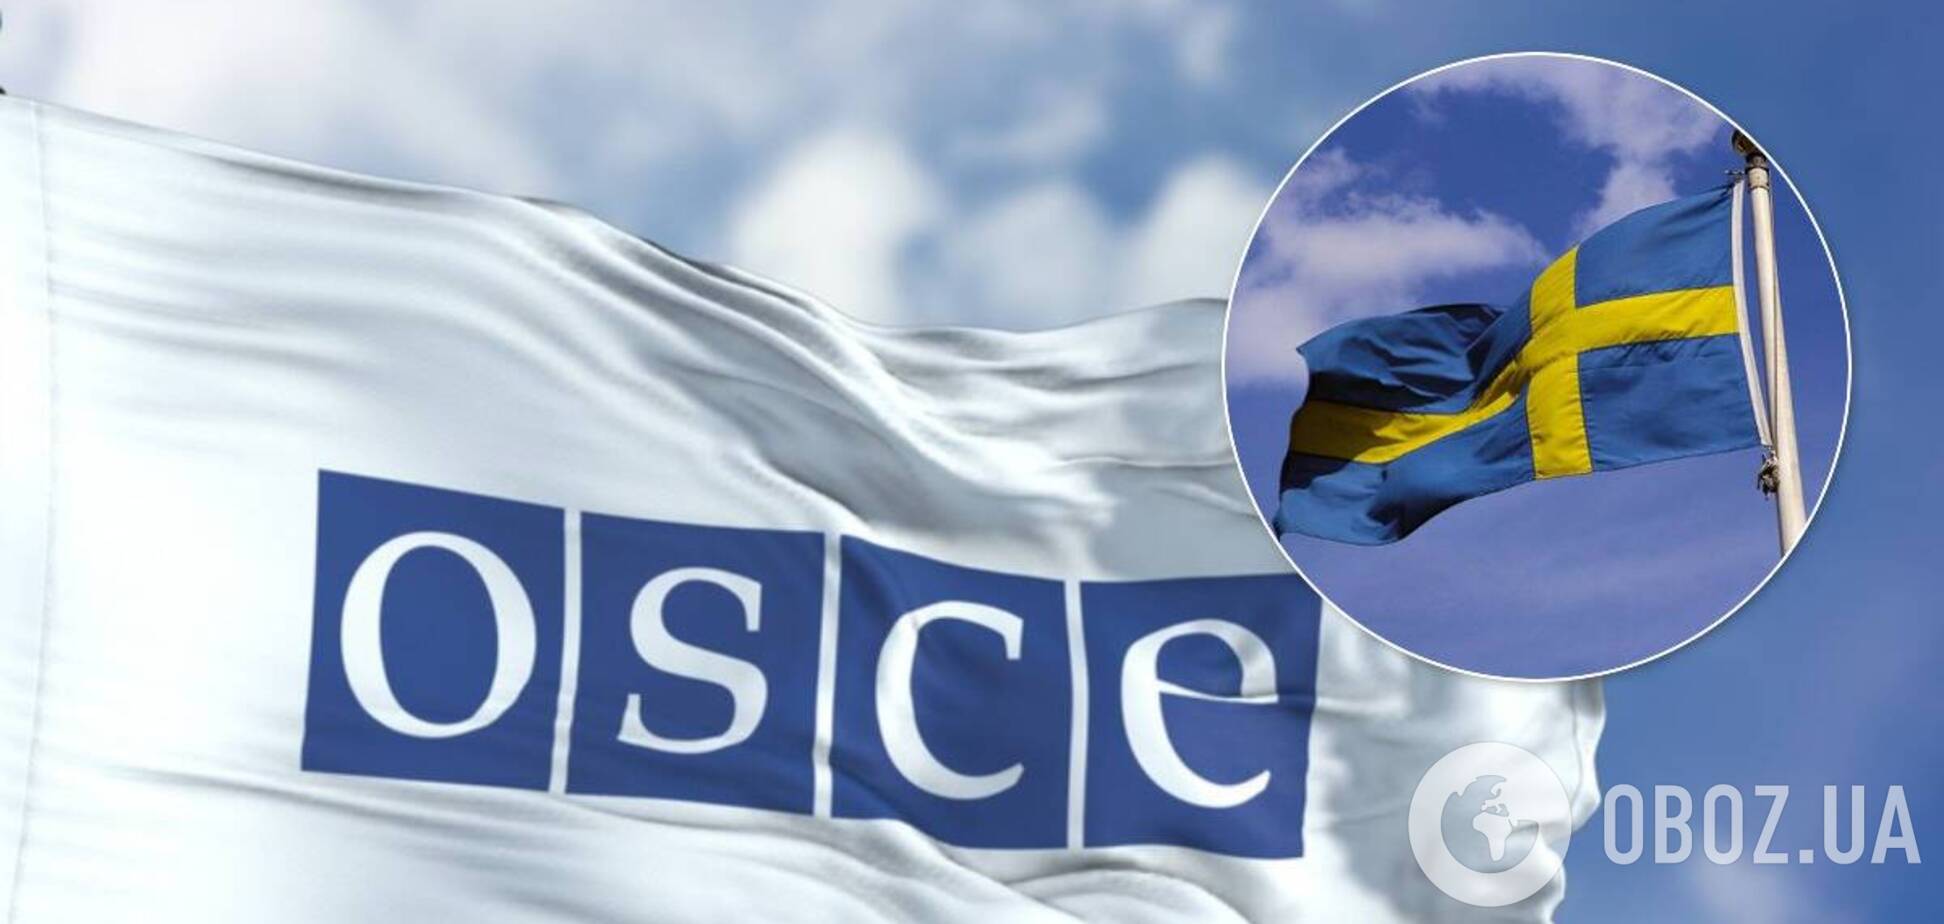 Швеція займеться питанням Криму після того, як очолить ОБСЄ, – заступник глави МЗС